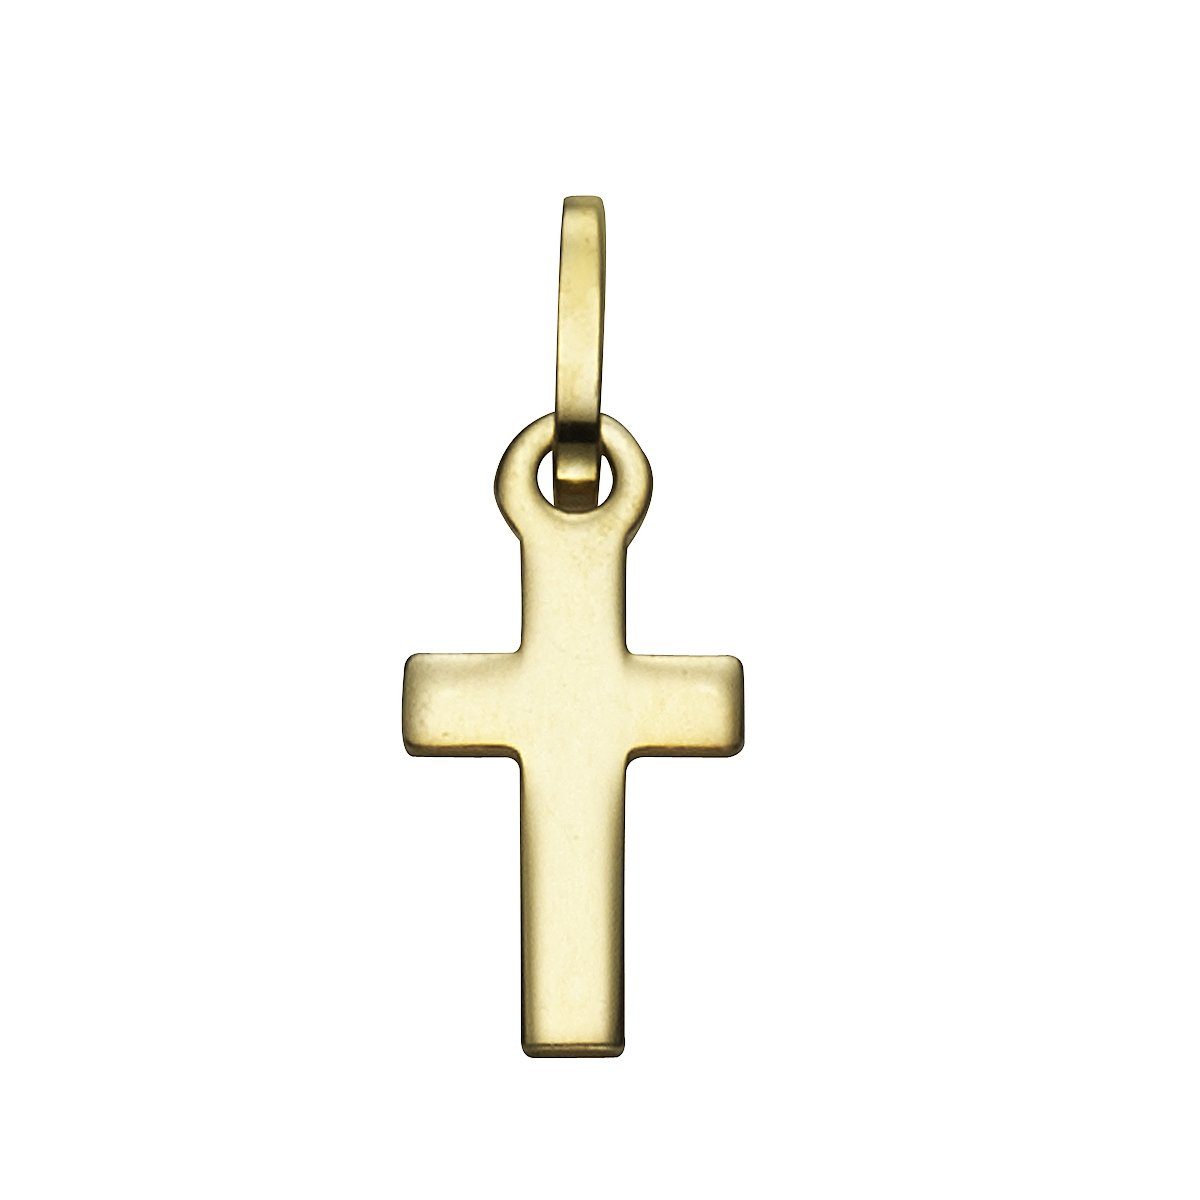 Kettenanhänger Gold 333 Vivance Hochwertig edlen Materialien Kreuz, aus gefertigt Motiv